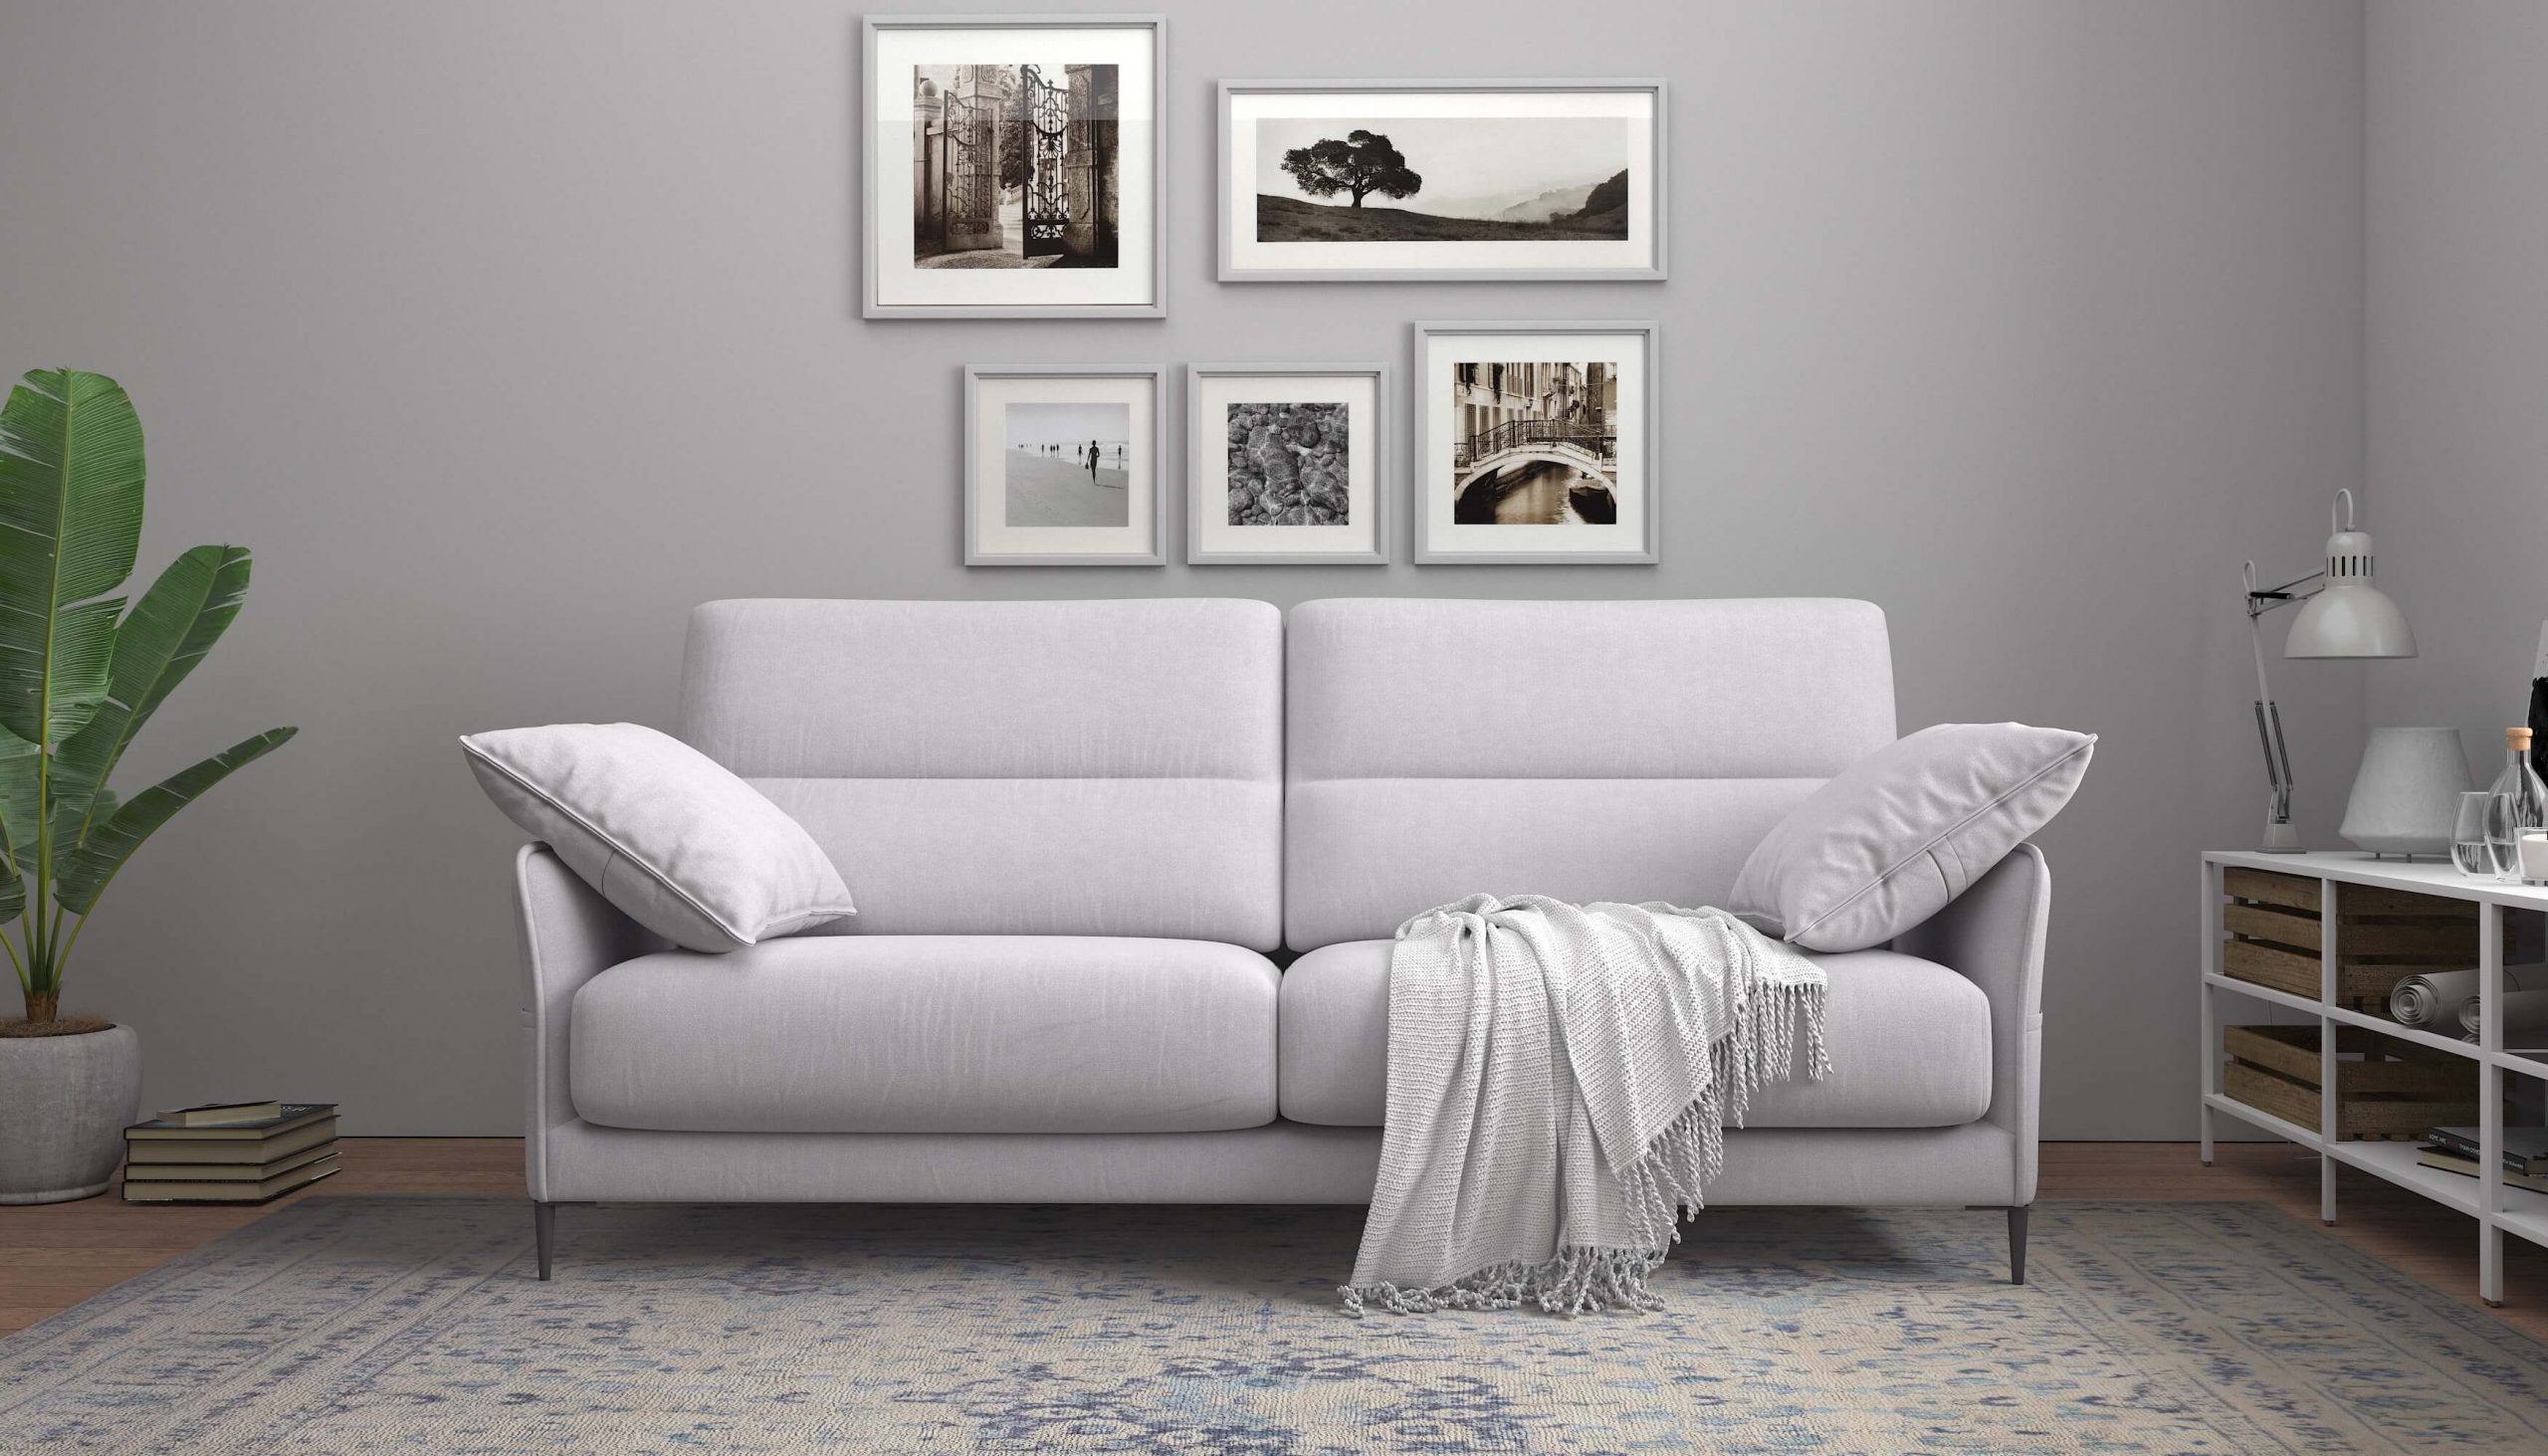 Malaga-compact-sofa-02